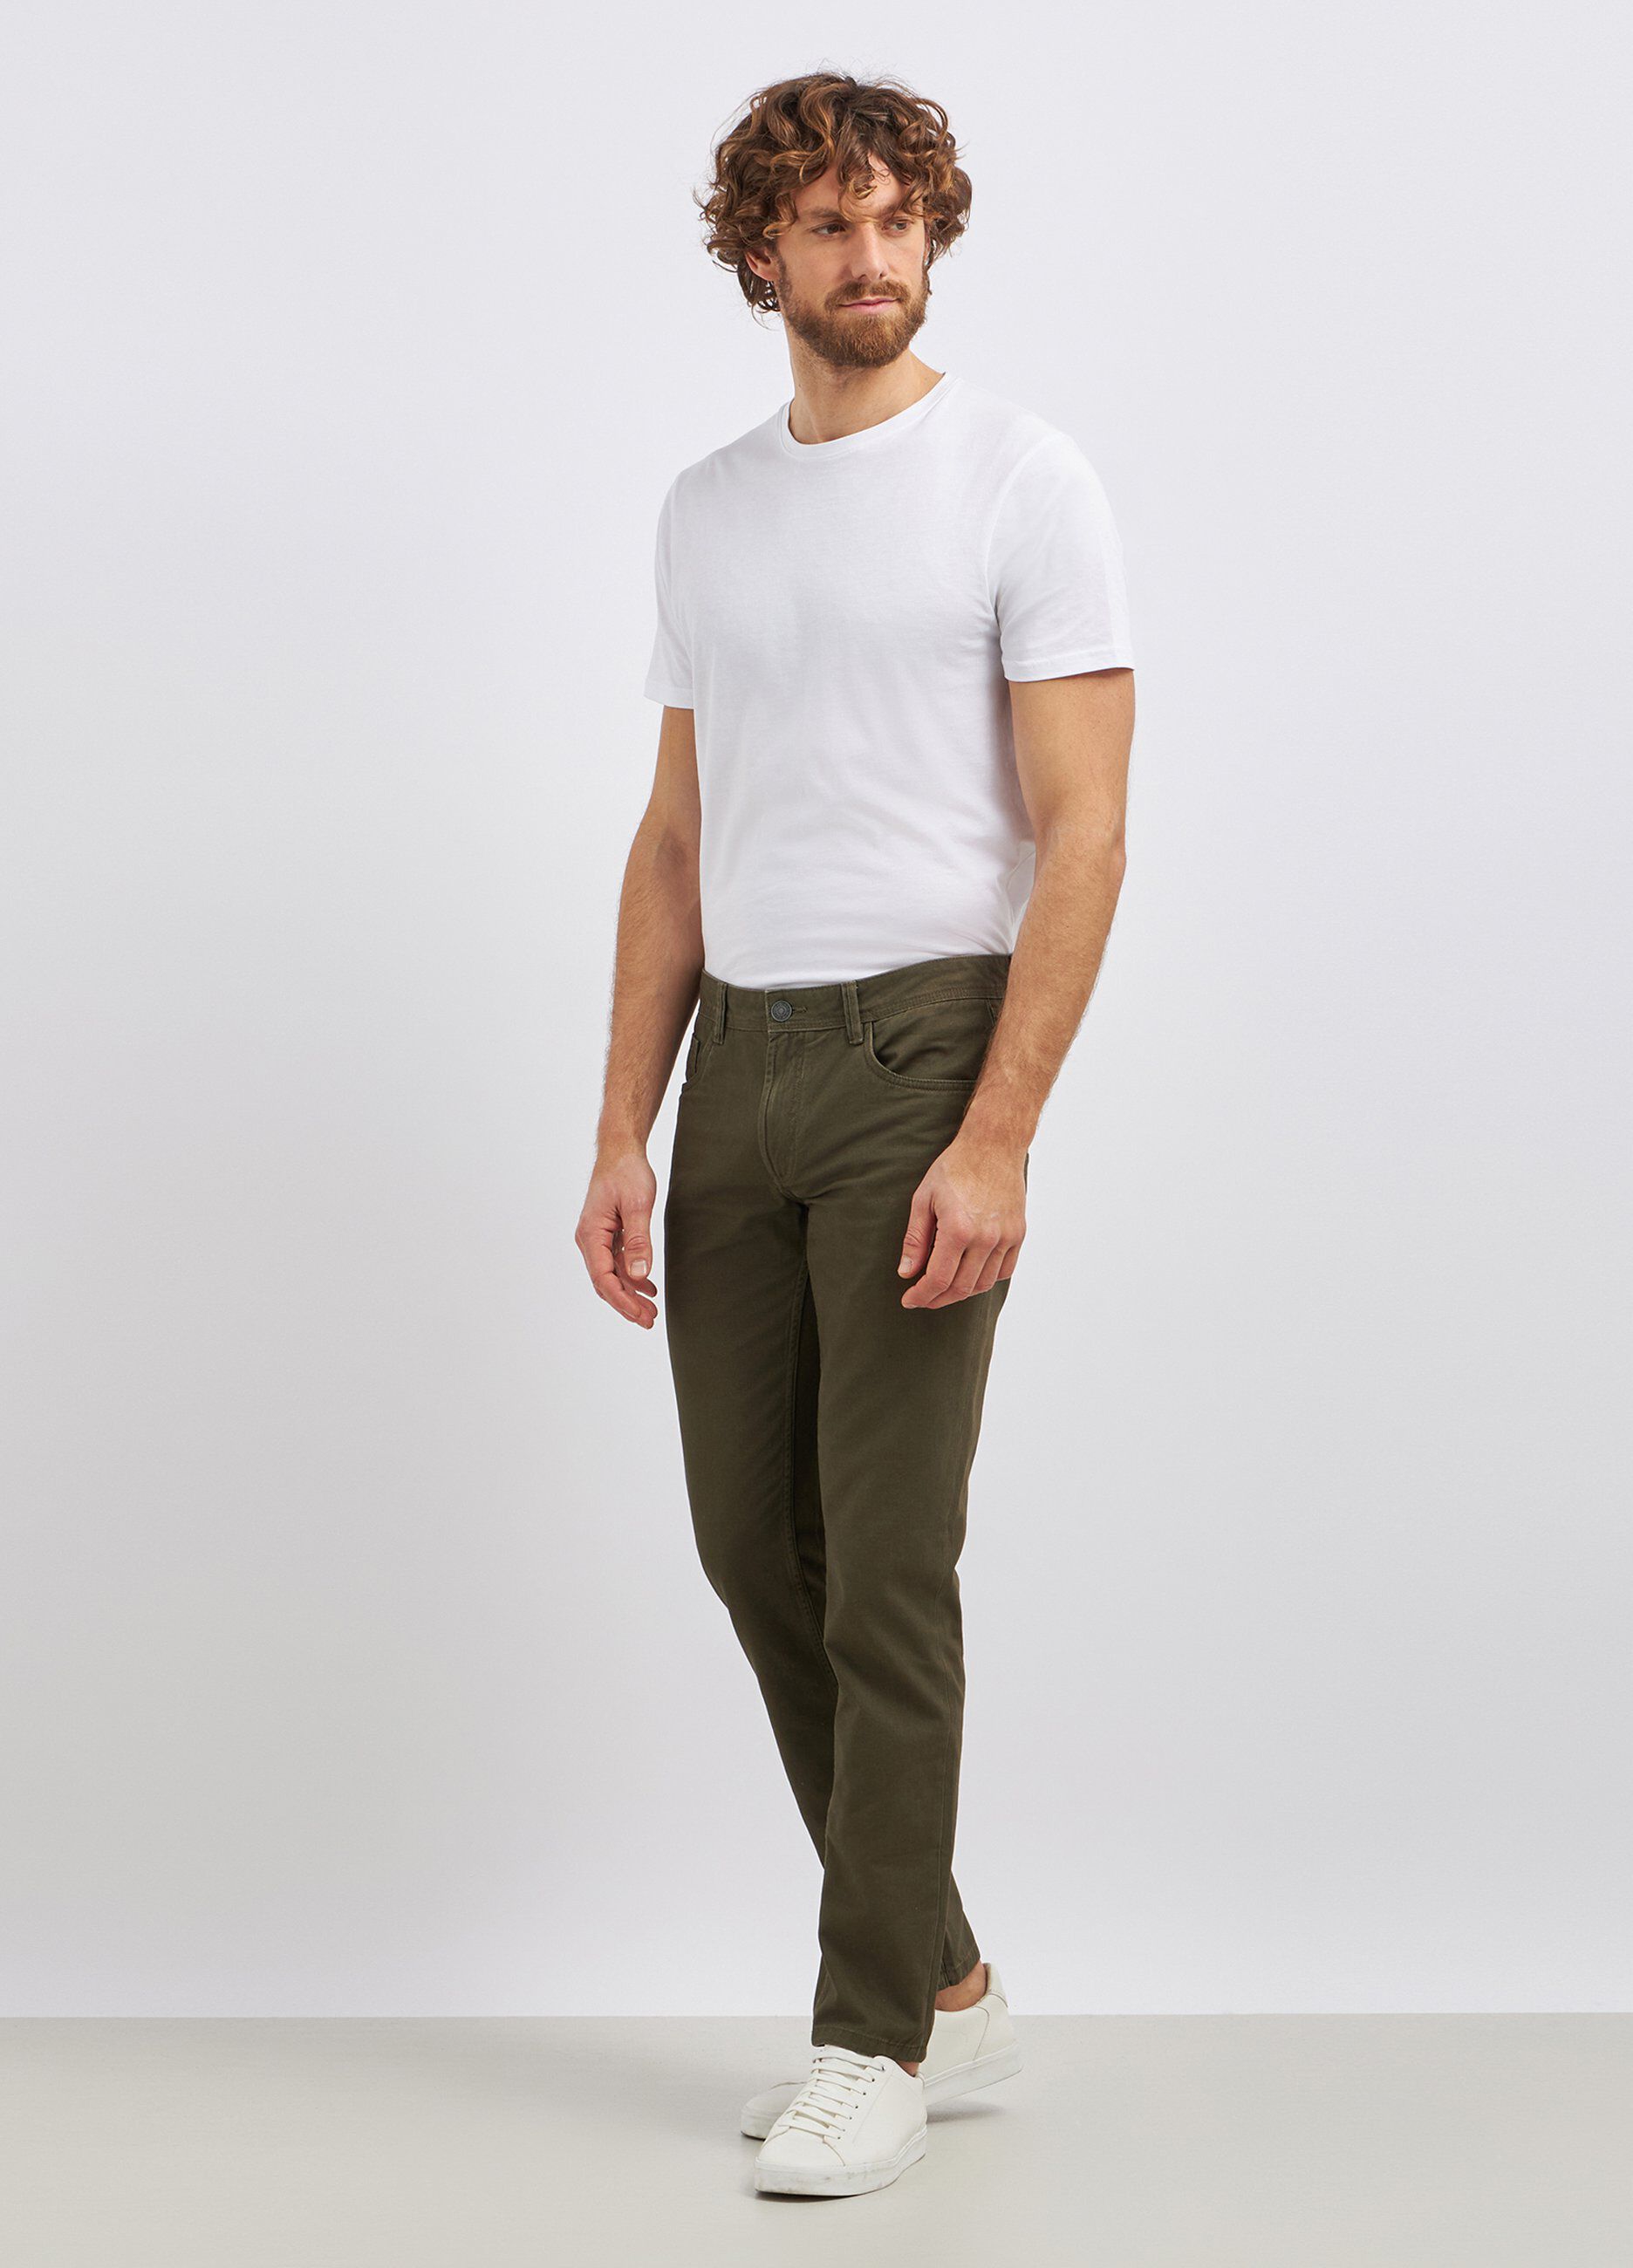 Pantaloni in puro cotone modello 5 tasche uomo_0